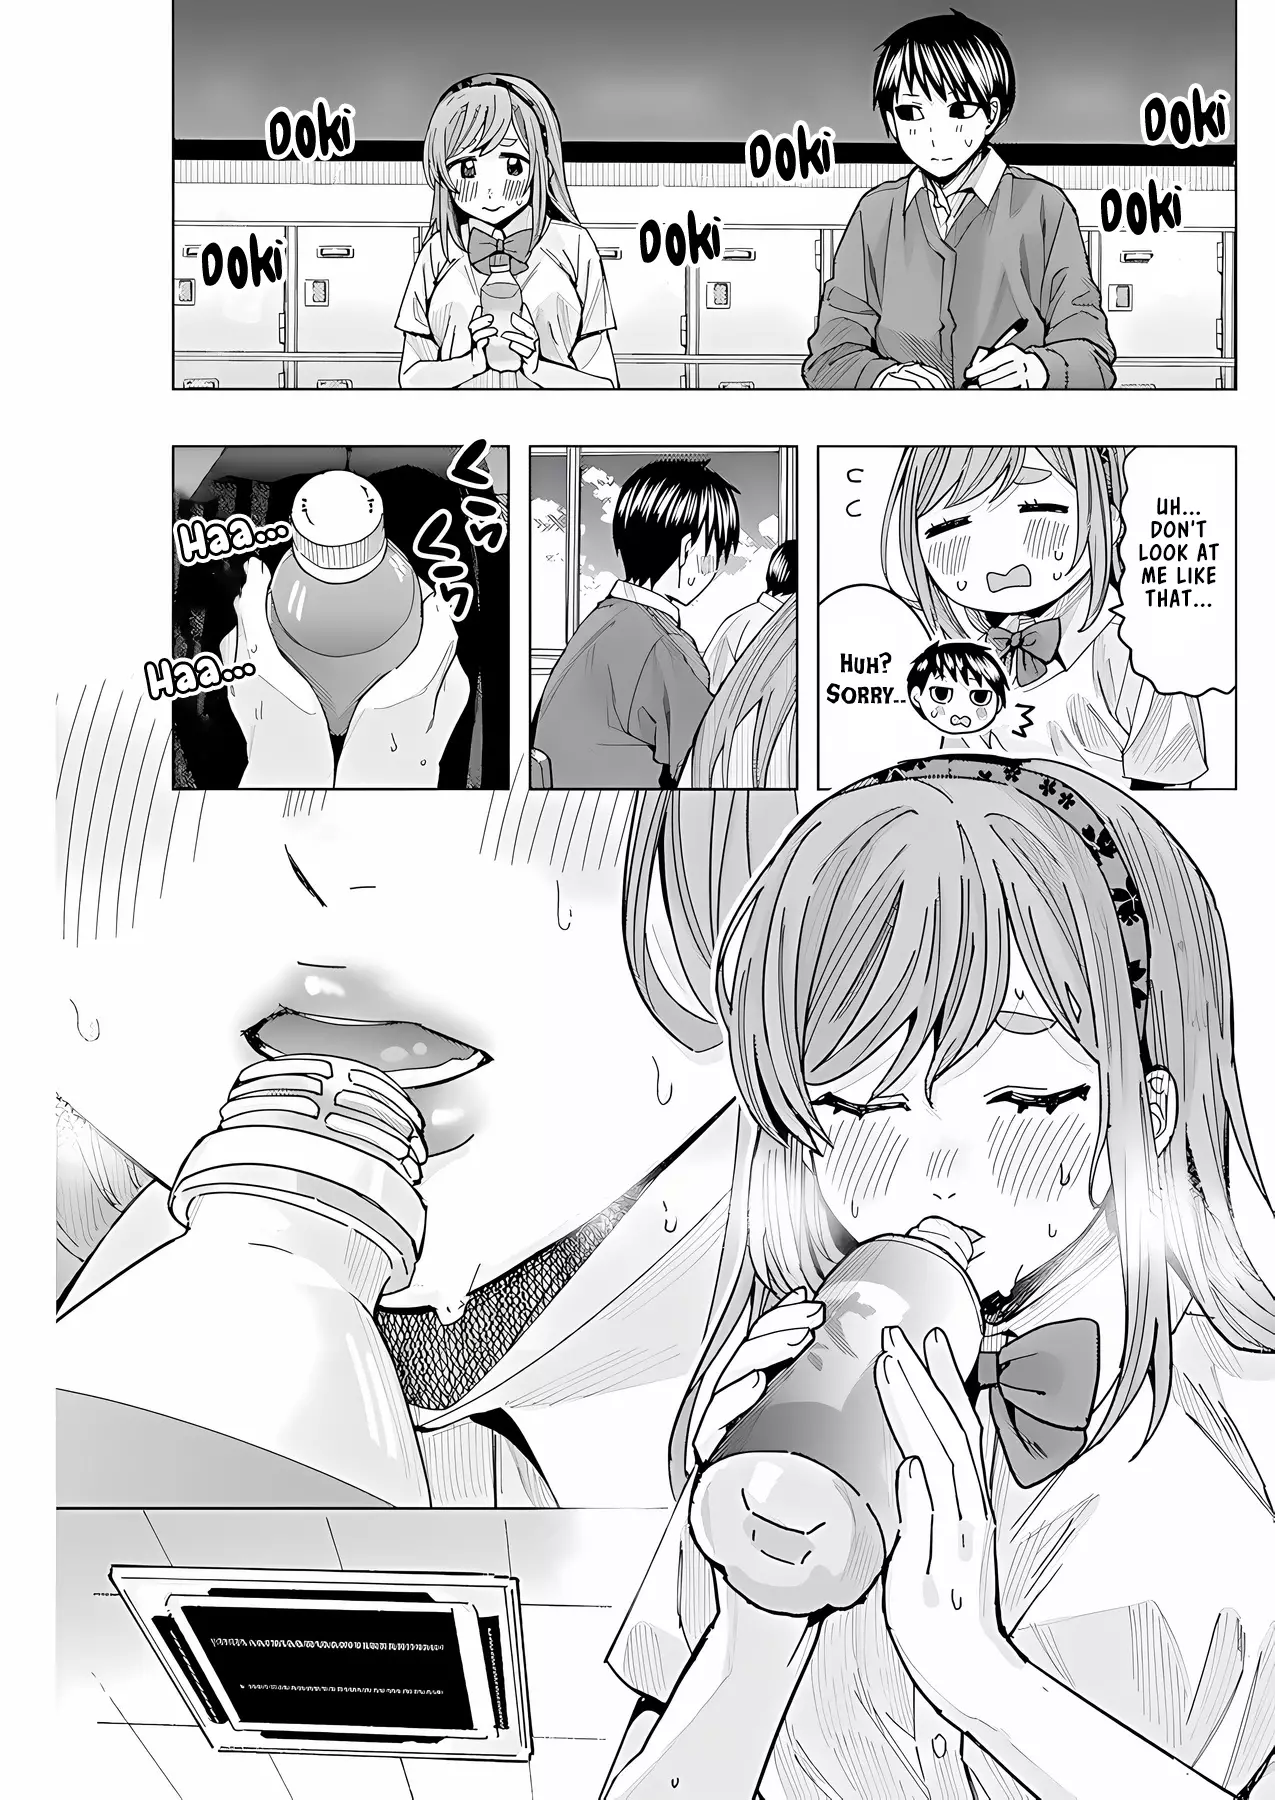 "nobukuni-San" Does She Like Me? - 26 page 14-0c526a85